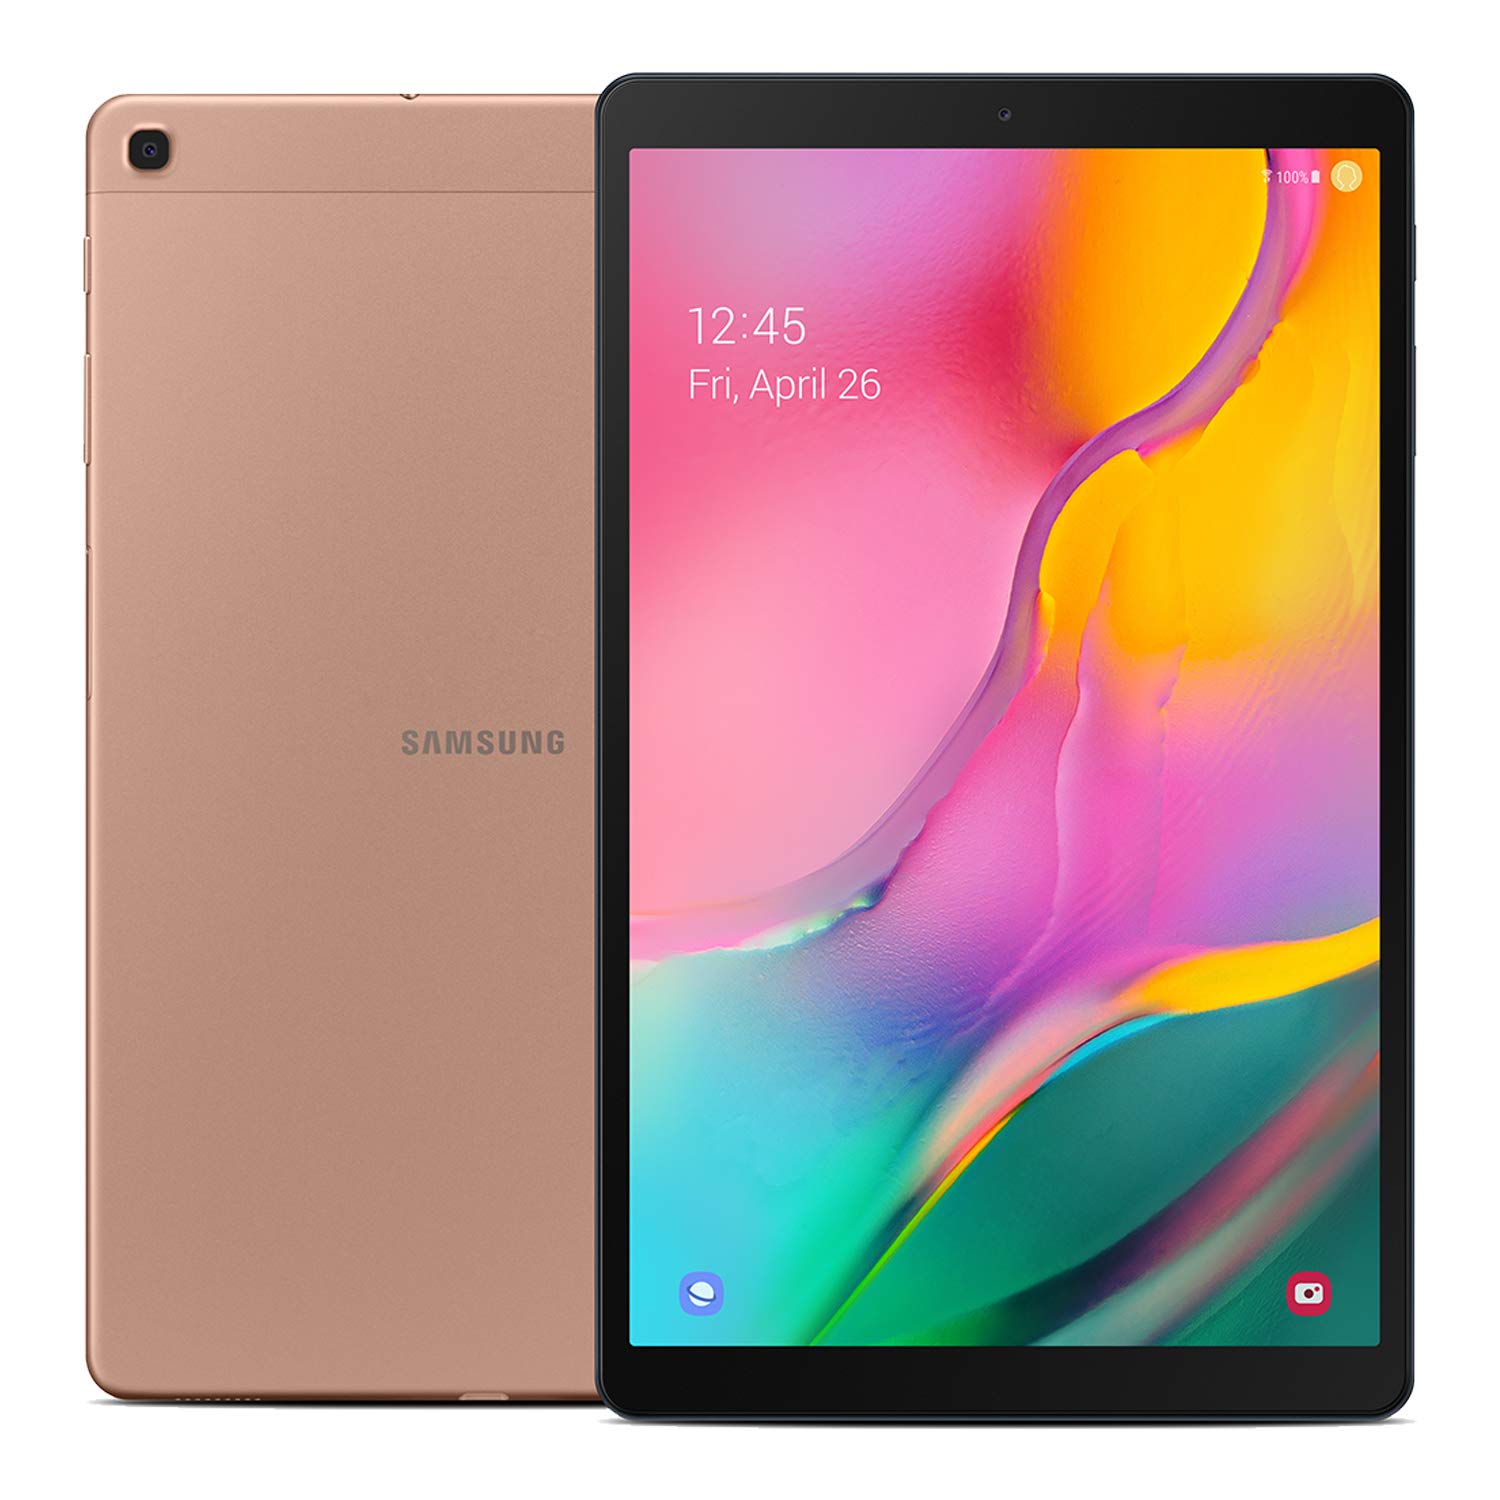 Samsung Galaxy Tab A 10.1 128 GB Wifi Tablet Gold (2019)